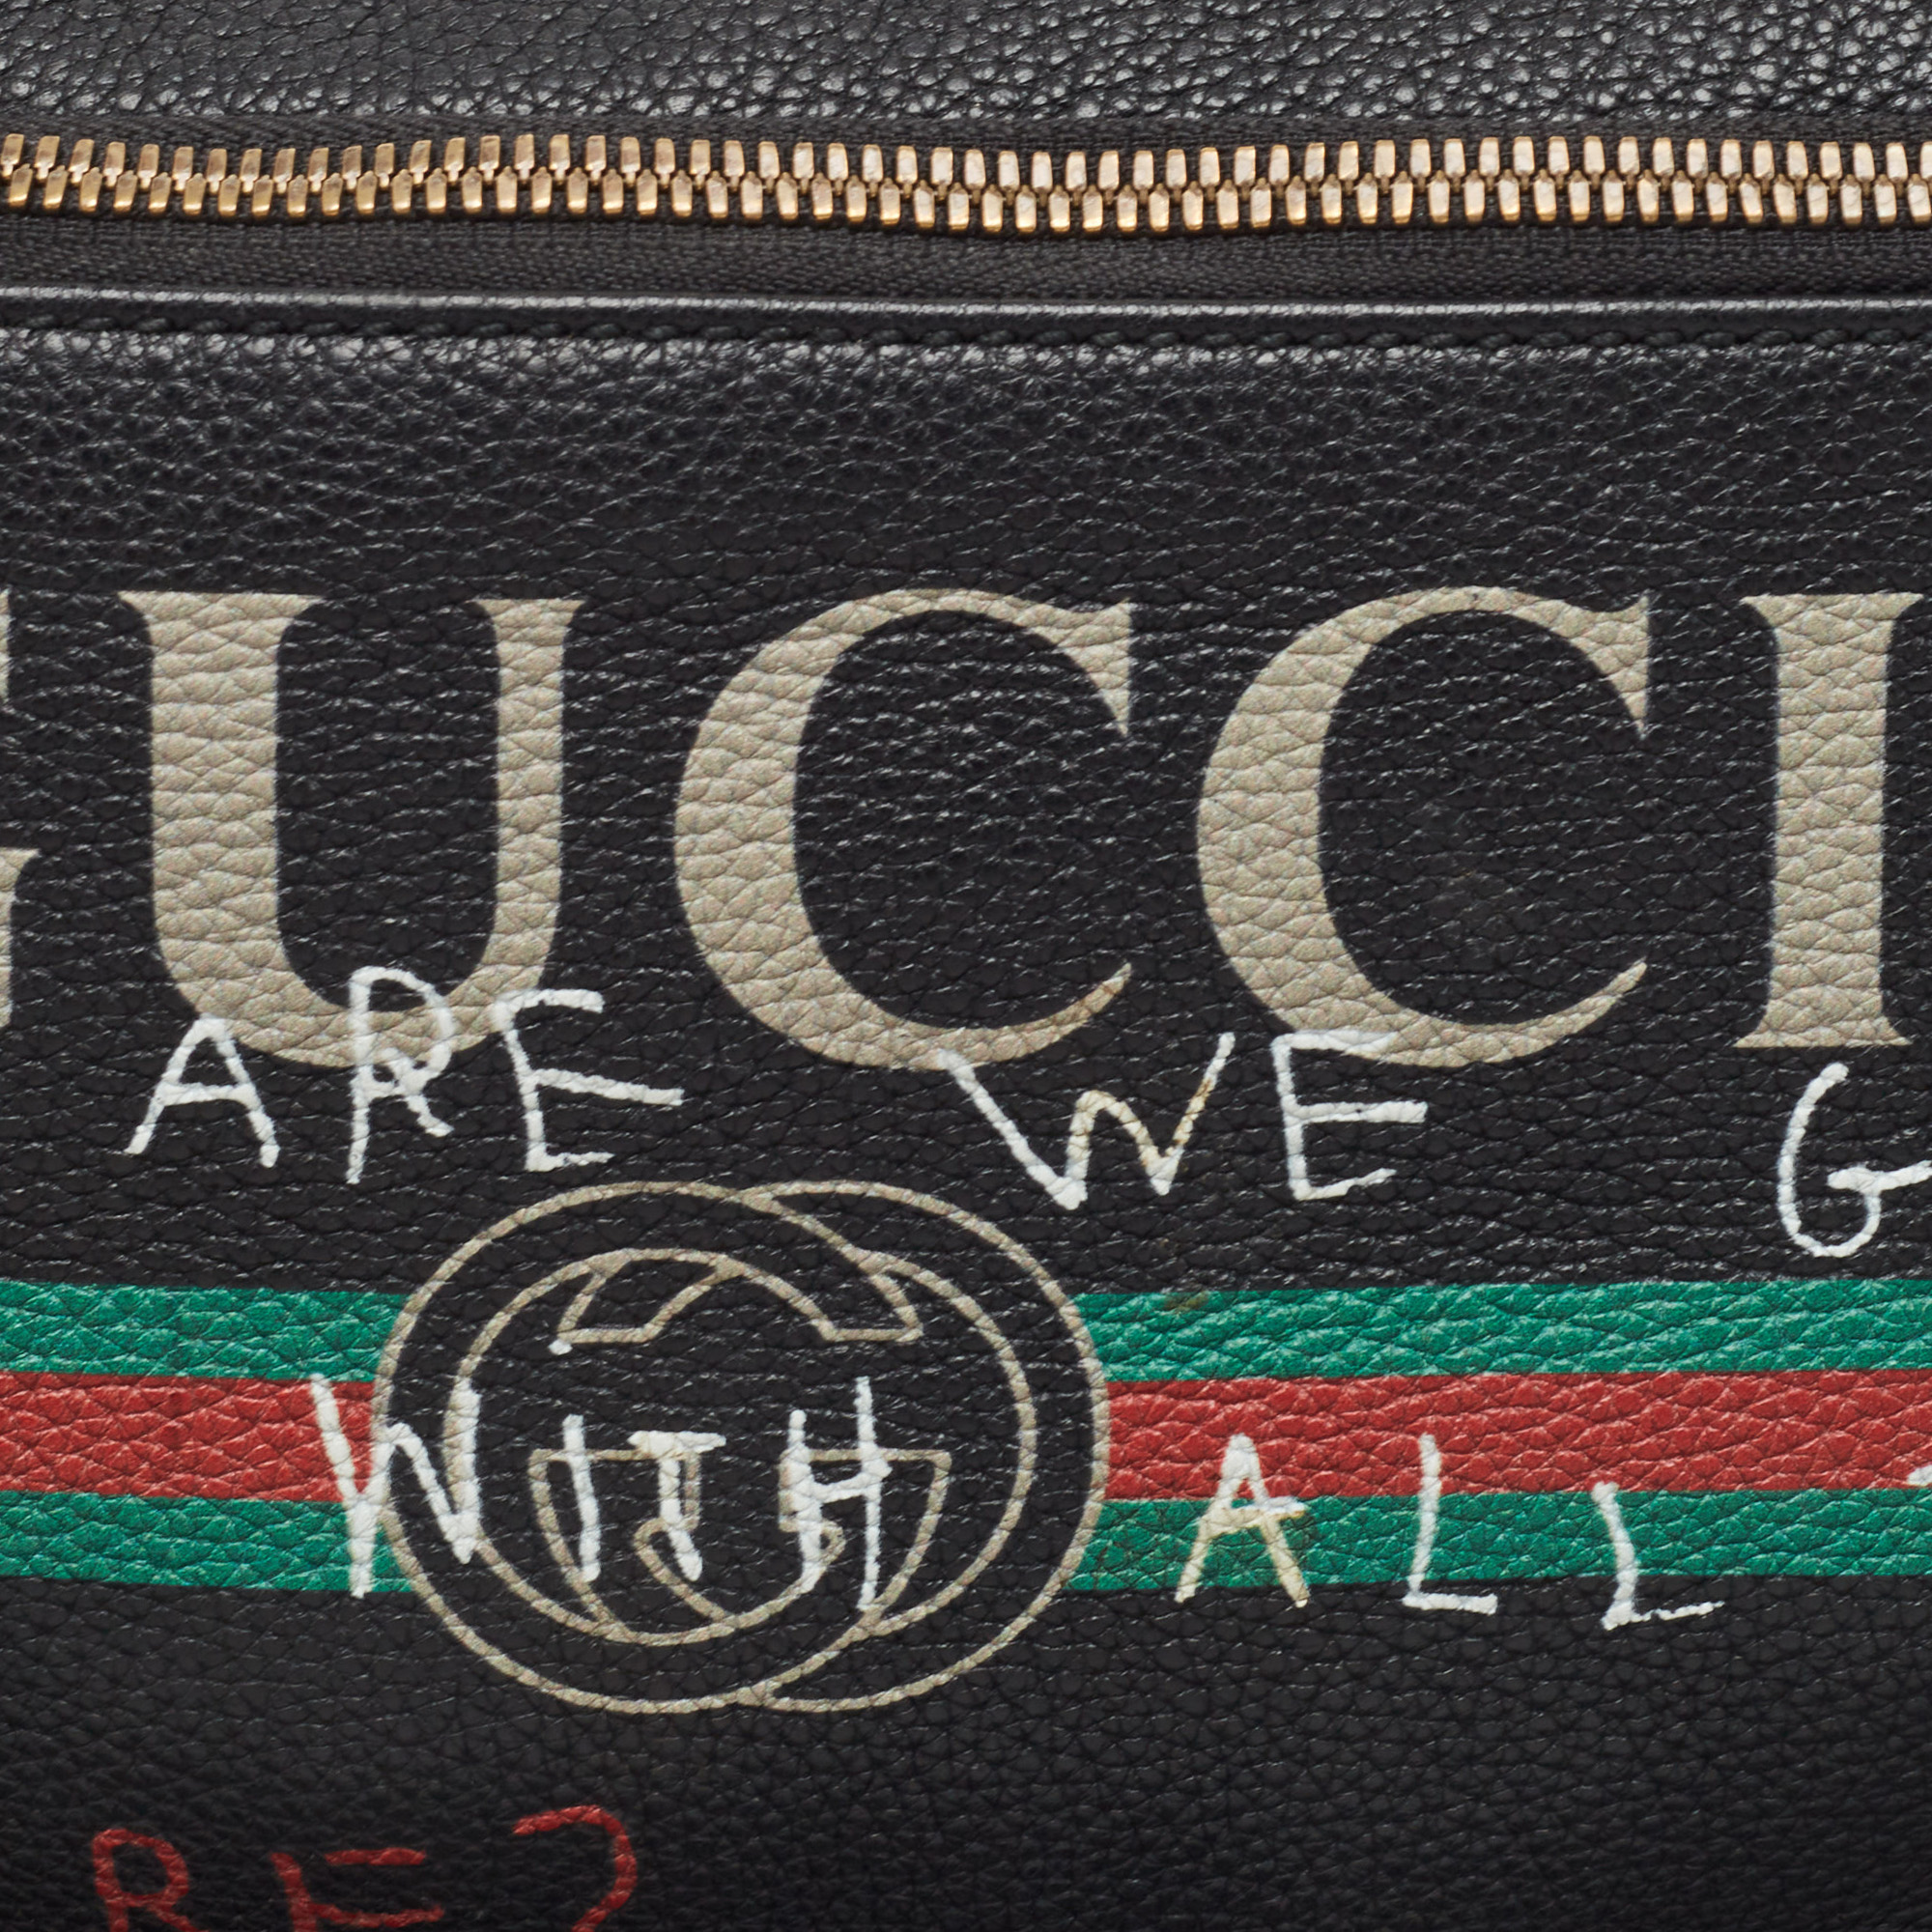 Gucci Black Pebbled Leather Logo Web Belt Bag